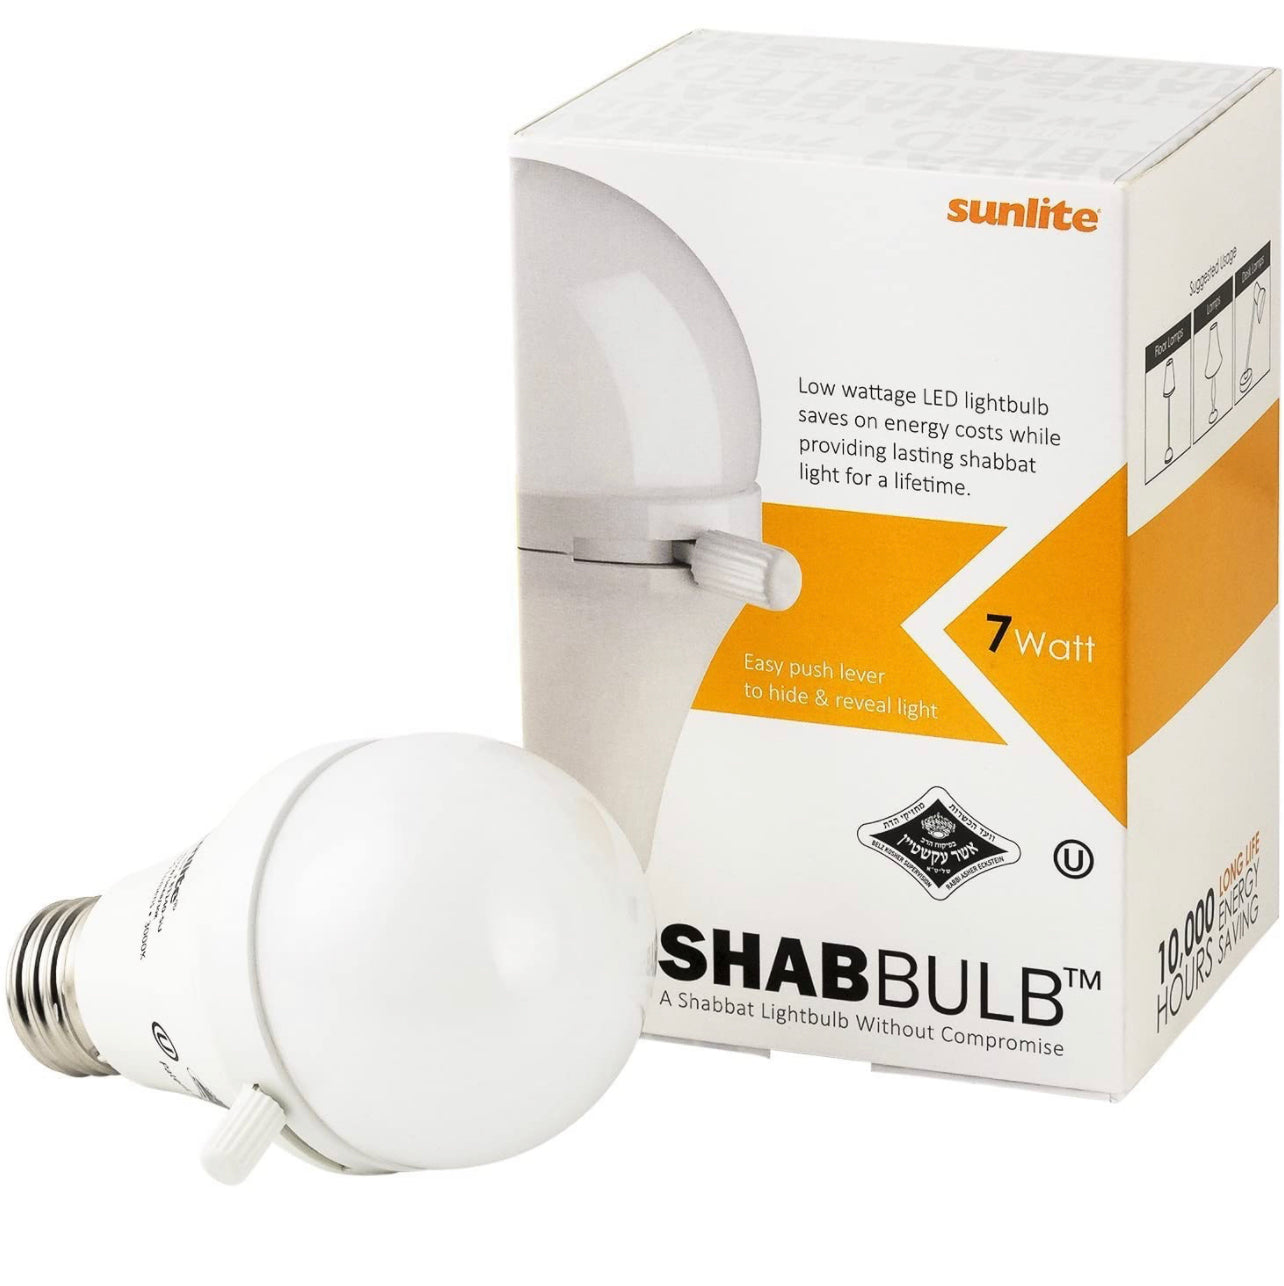 Shabulb Shabbat bulb